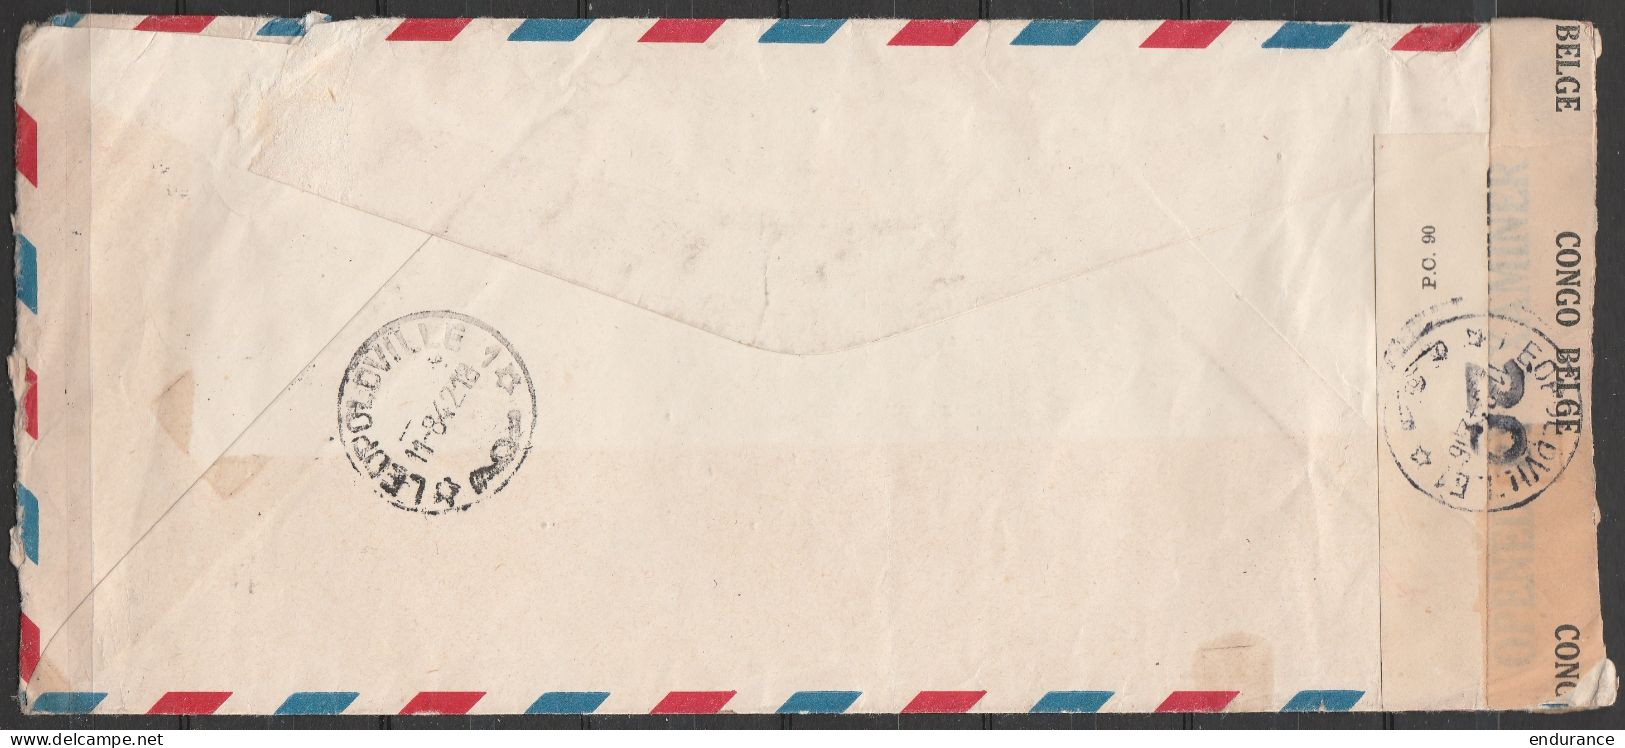 USA - L. Avion EP 6c + 1$14 Flam. CINCINNATI /JUL 20/ OHIO/ 1942 Pour LEOPOLDVILLE - Bande Censure CONGO BELGE 20 (au Do - Lettres & Documents